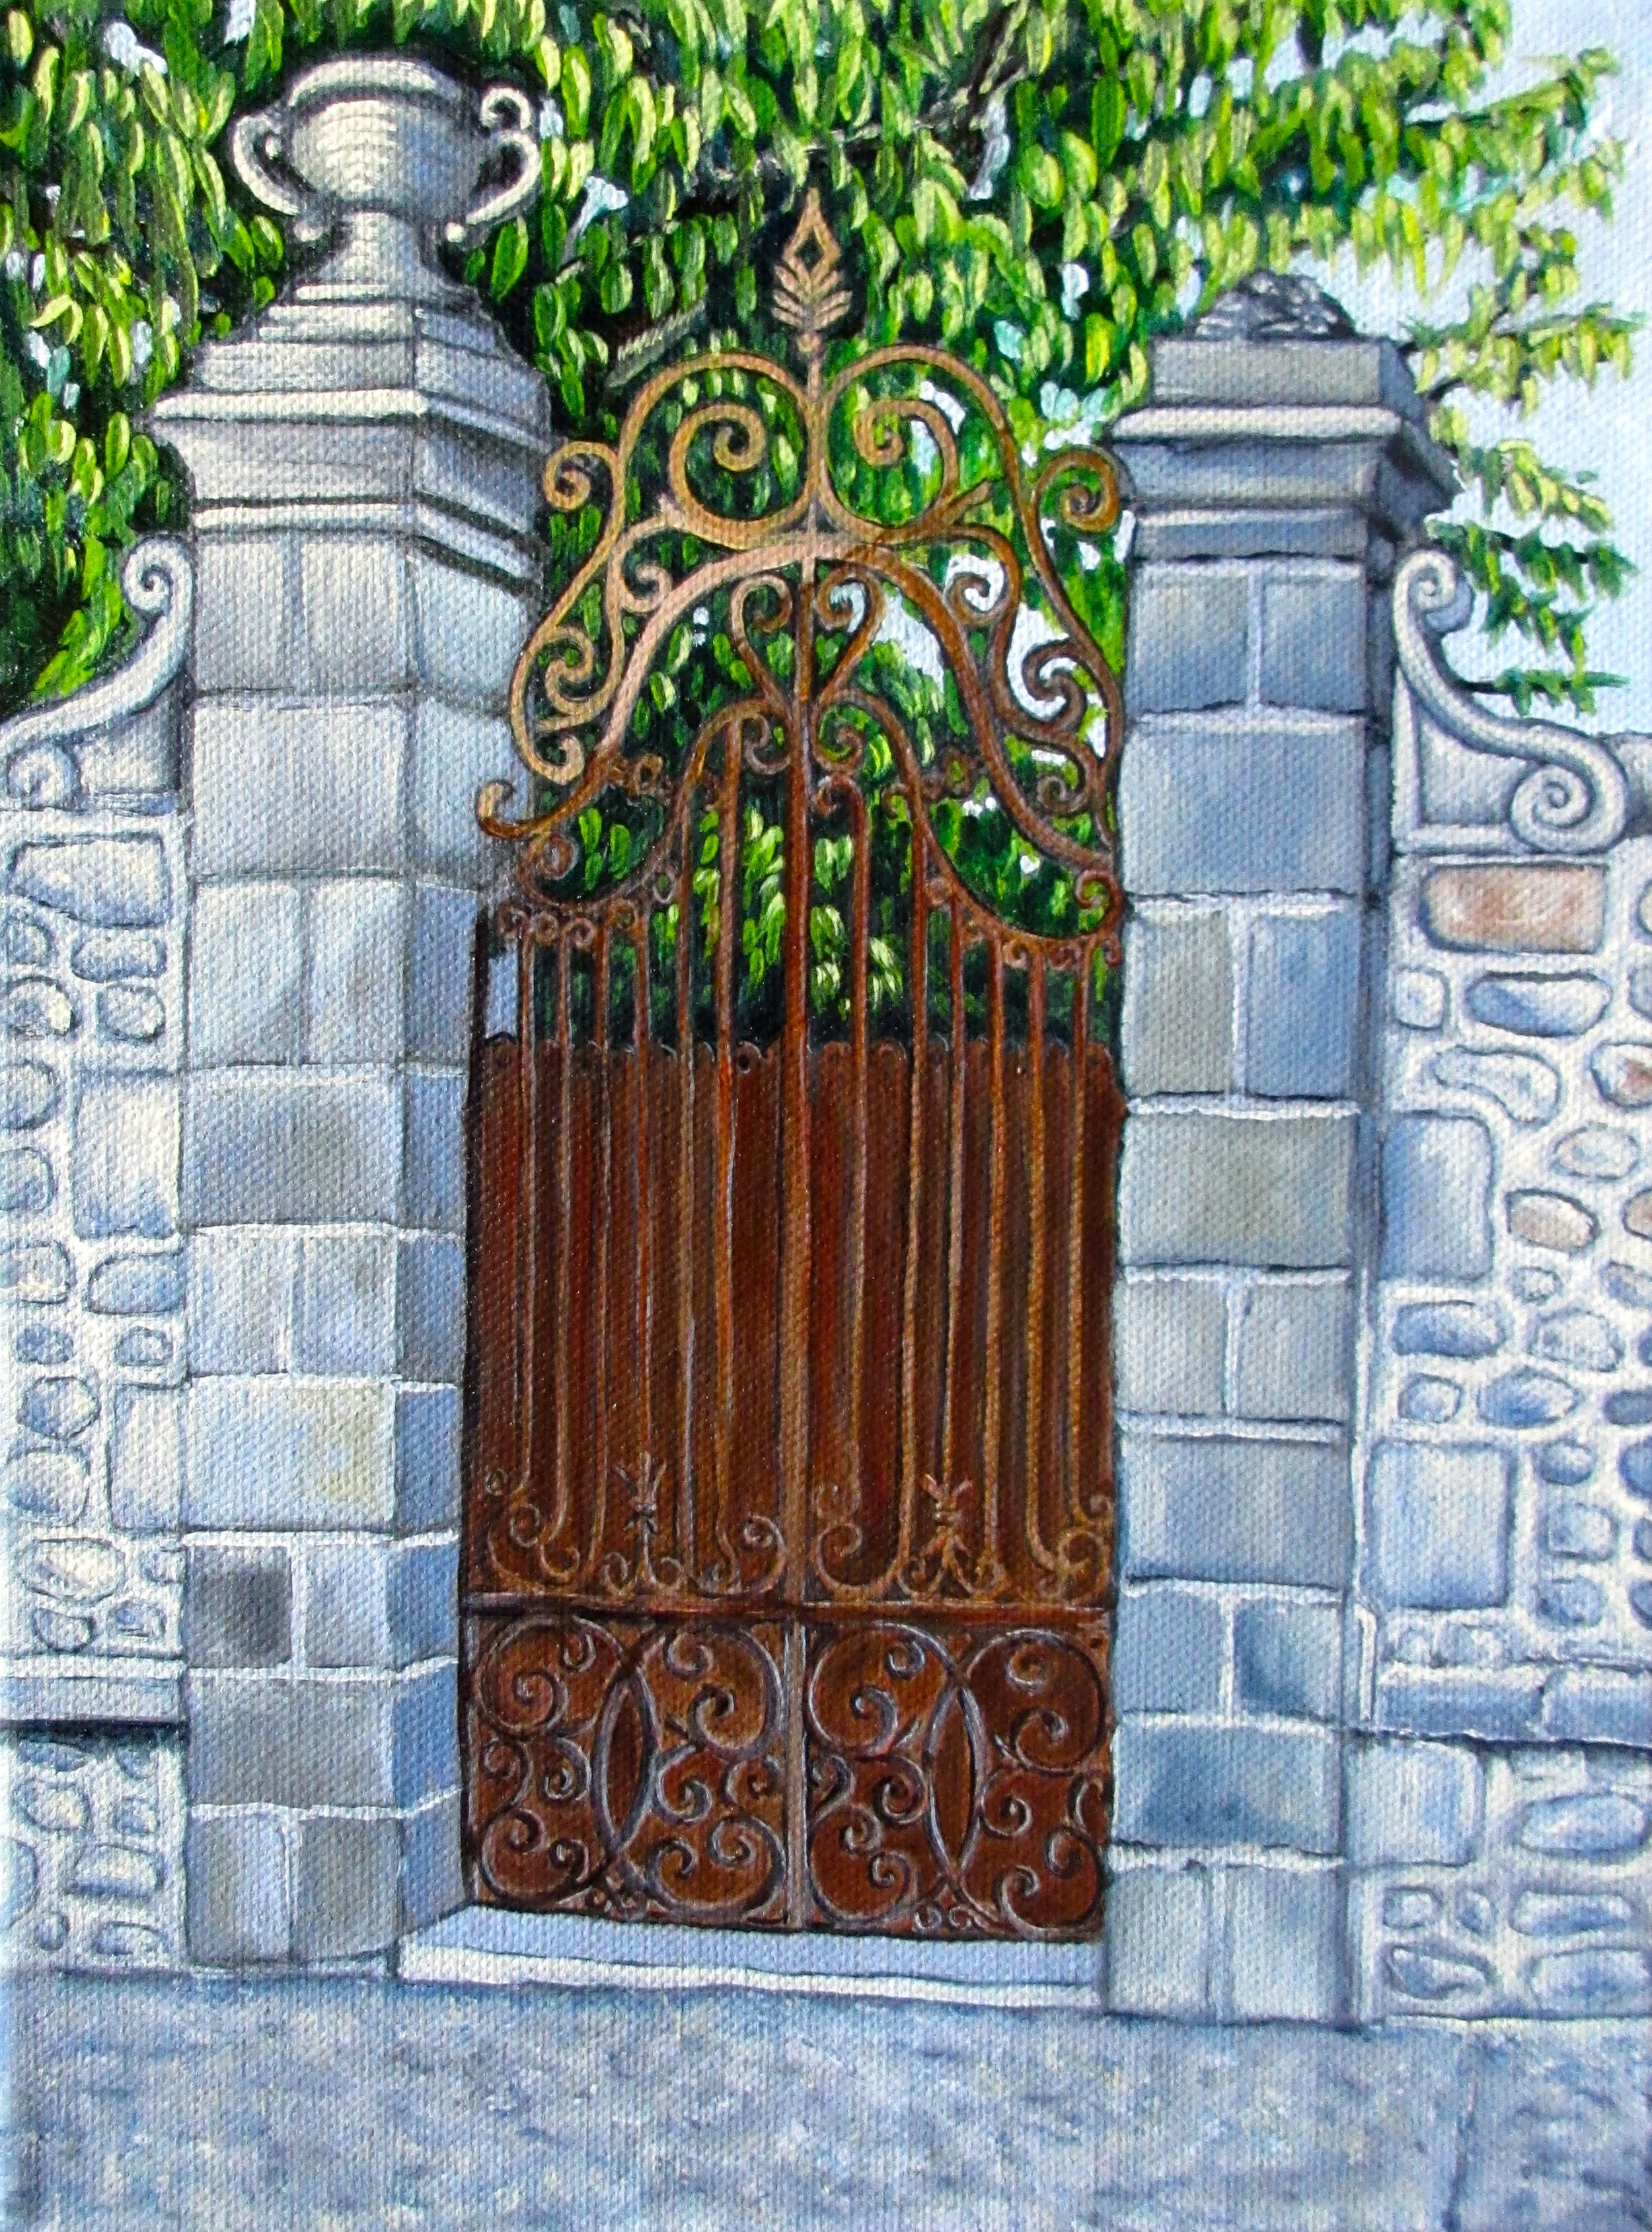 #467 - "Rusty Gate"